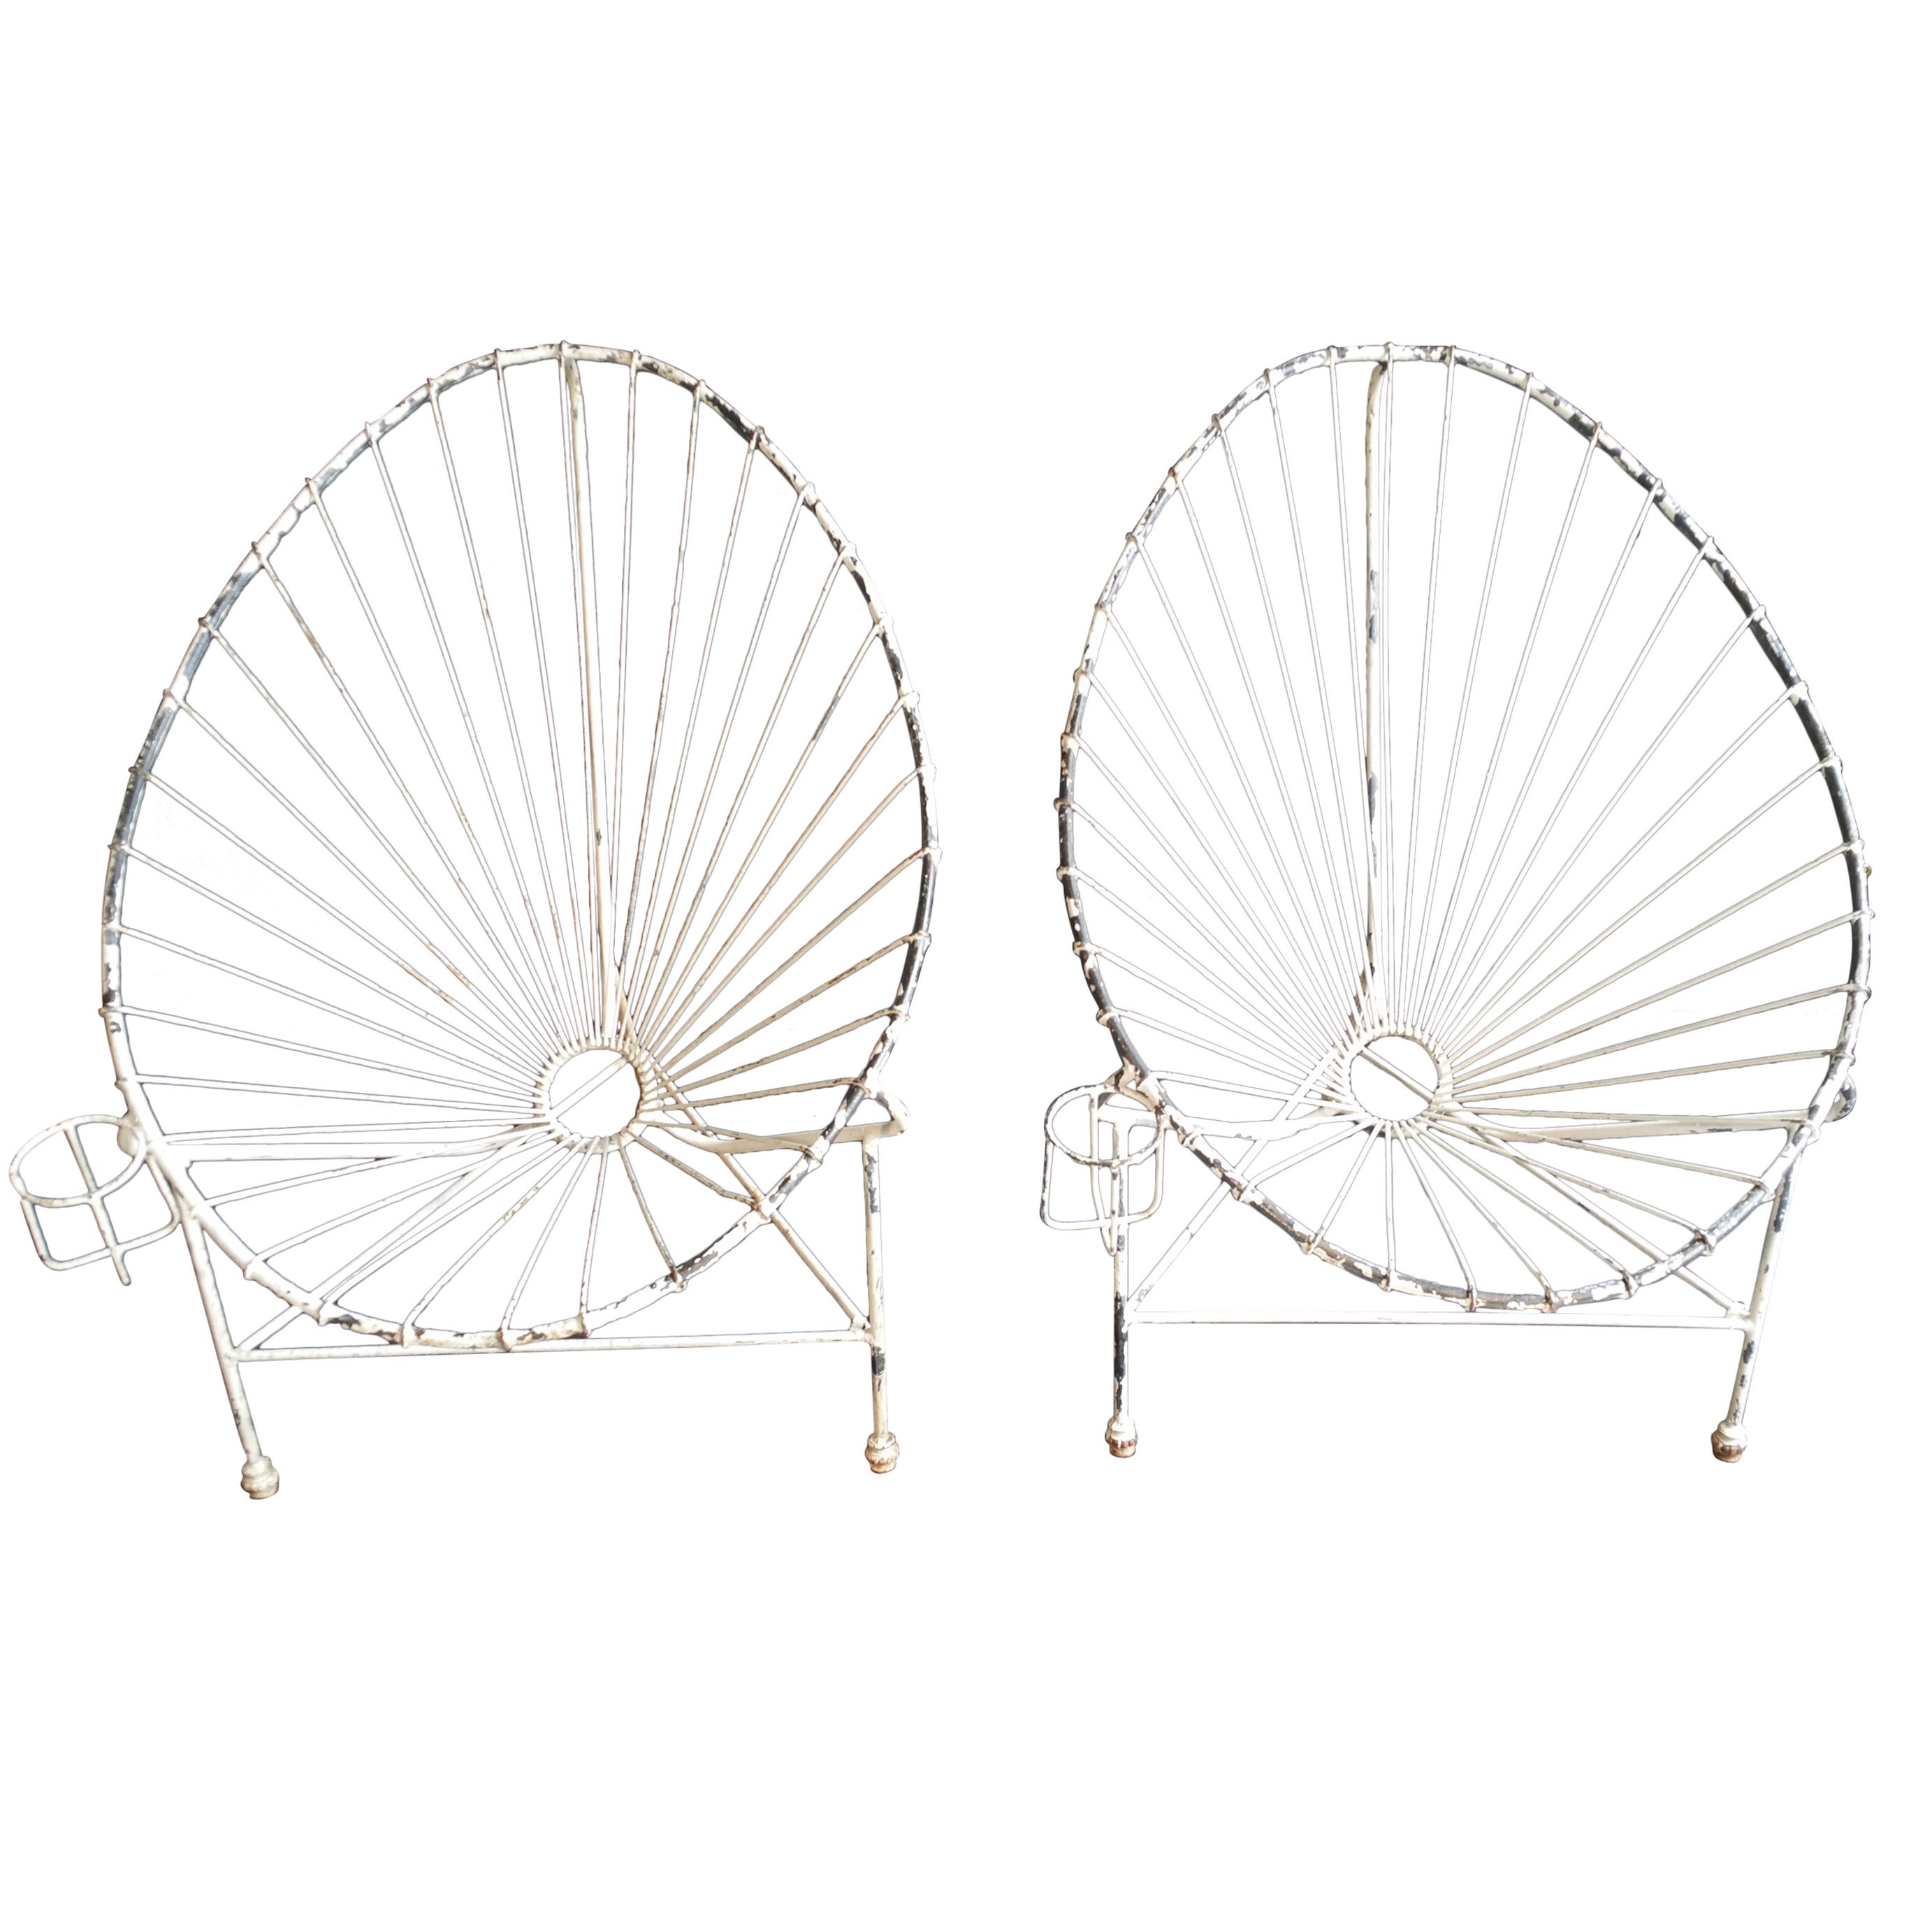 Pair of Modernist Wire Iron Garden Chairs, Manner of Mathieu Matégot